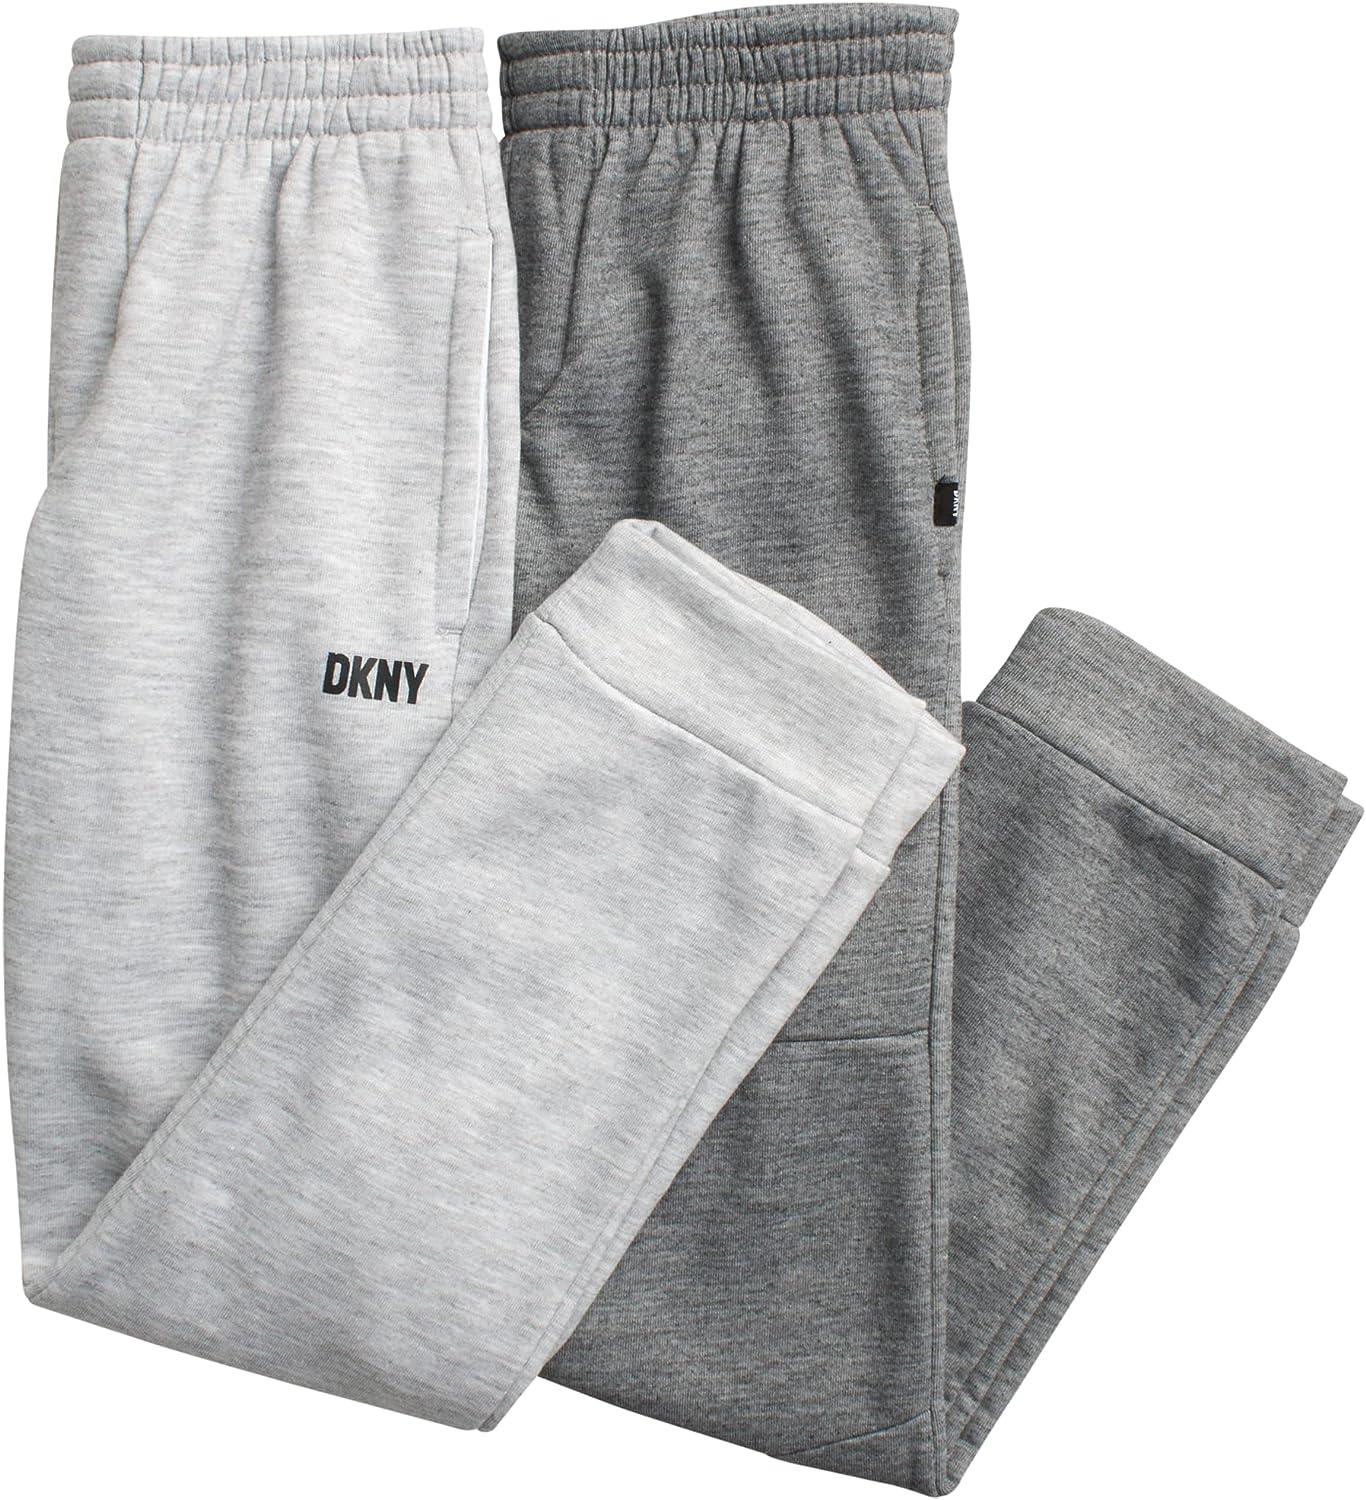  DKNY Boys? Sweatpants ? 4 Pack Basic Active Fleece